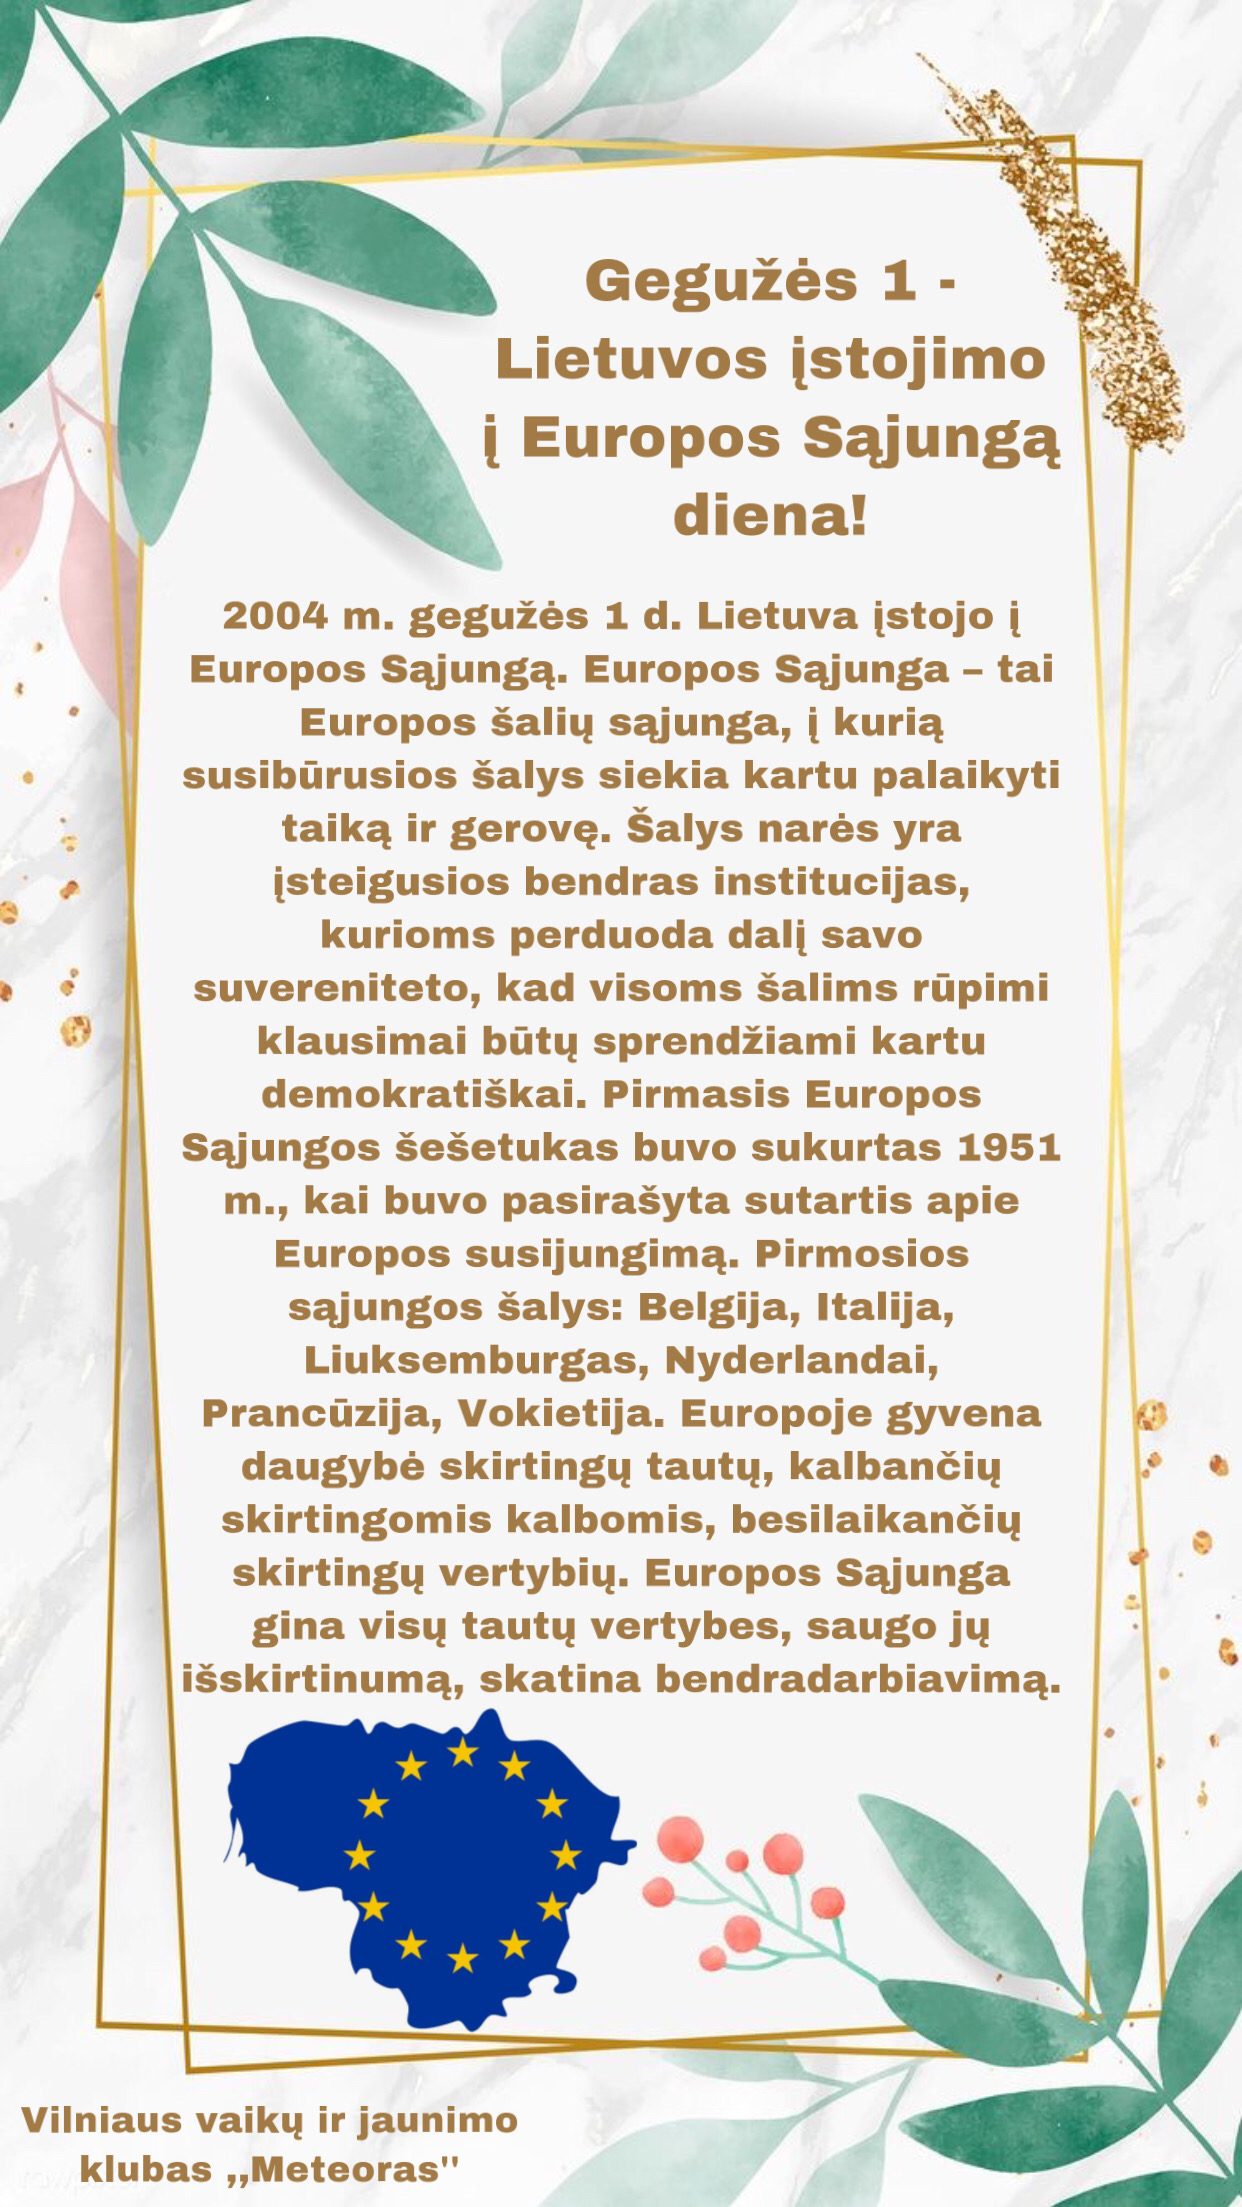 Lietuvos įstojimo į Europos Sąjungą diena image5 1